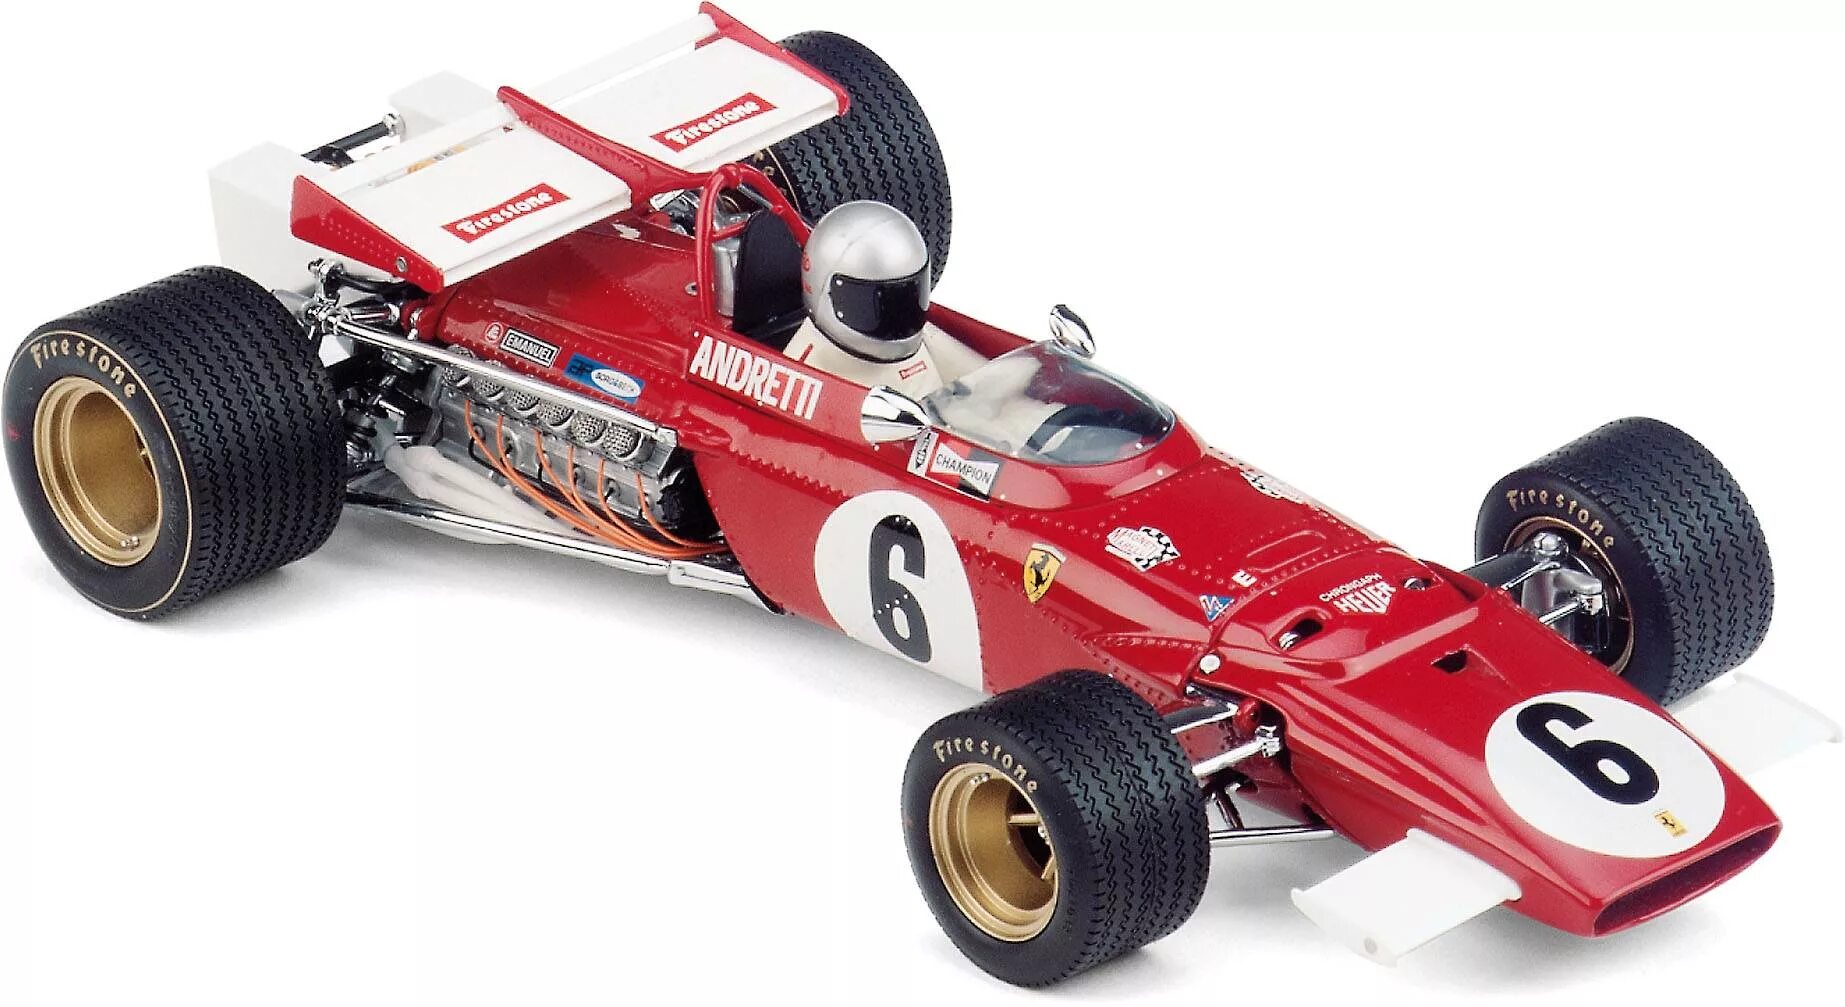 Ferrari 312 t 1/18 Exoto. Ferrari 312b рама. Ferrari 312t 1971. Ferrari 312/67.